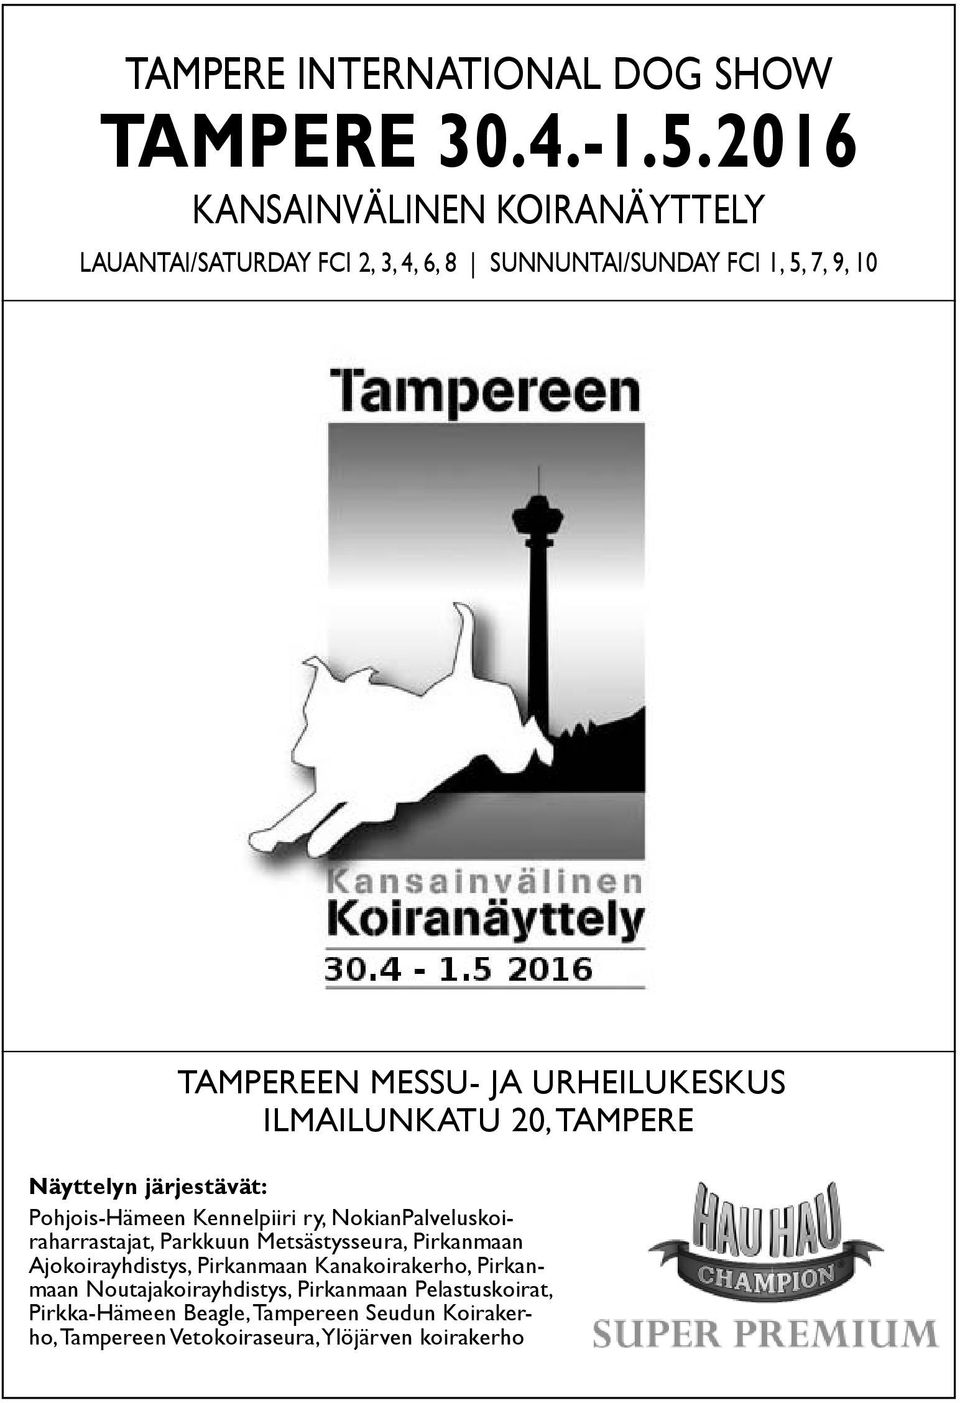 URHEILUKESKUS ILMAILUNKATU 20, TAMPERE Näyttelyn järjestävät: Pohjois-Hämeen Kennelpiiri ry, NokianPalveluskoiraharrastajat, Parkkuun